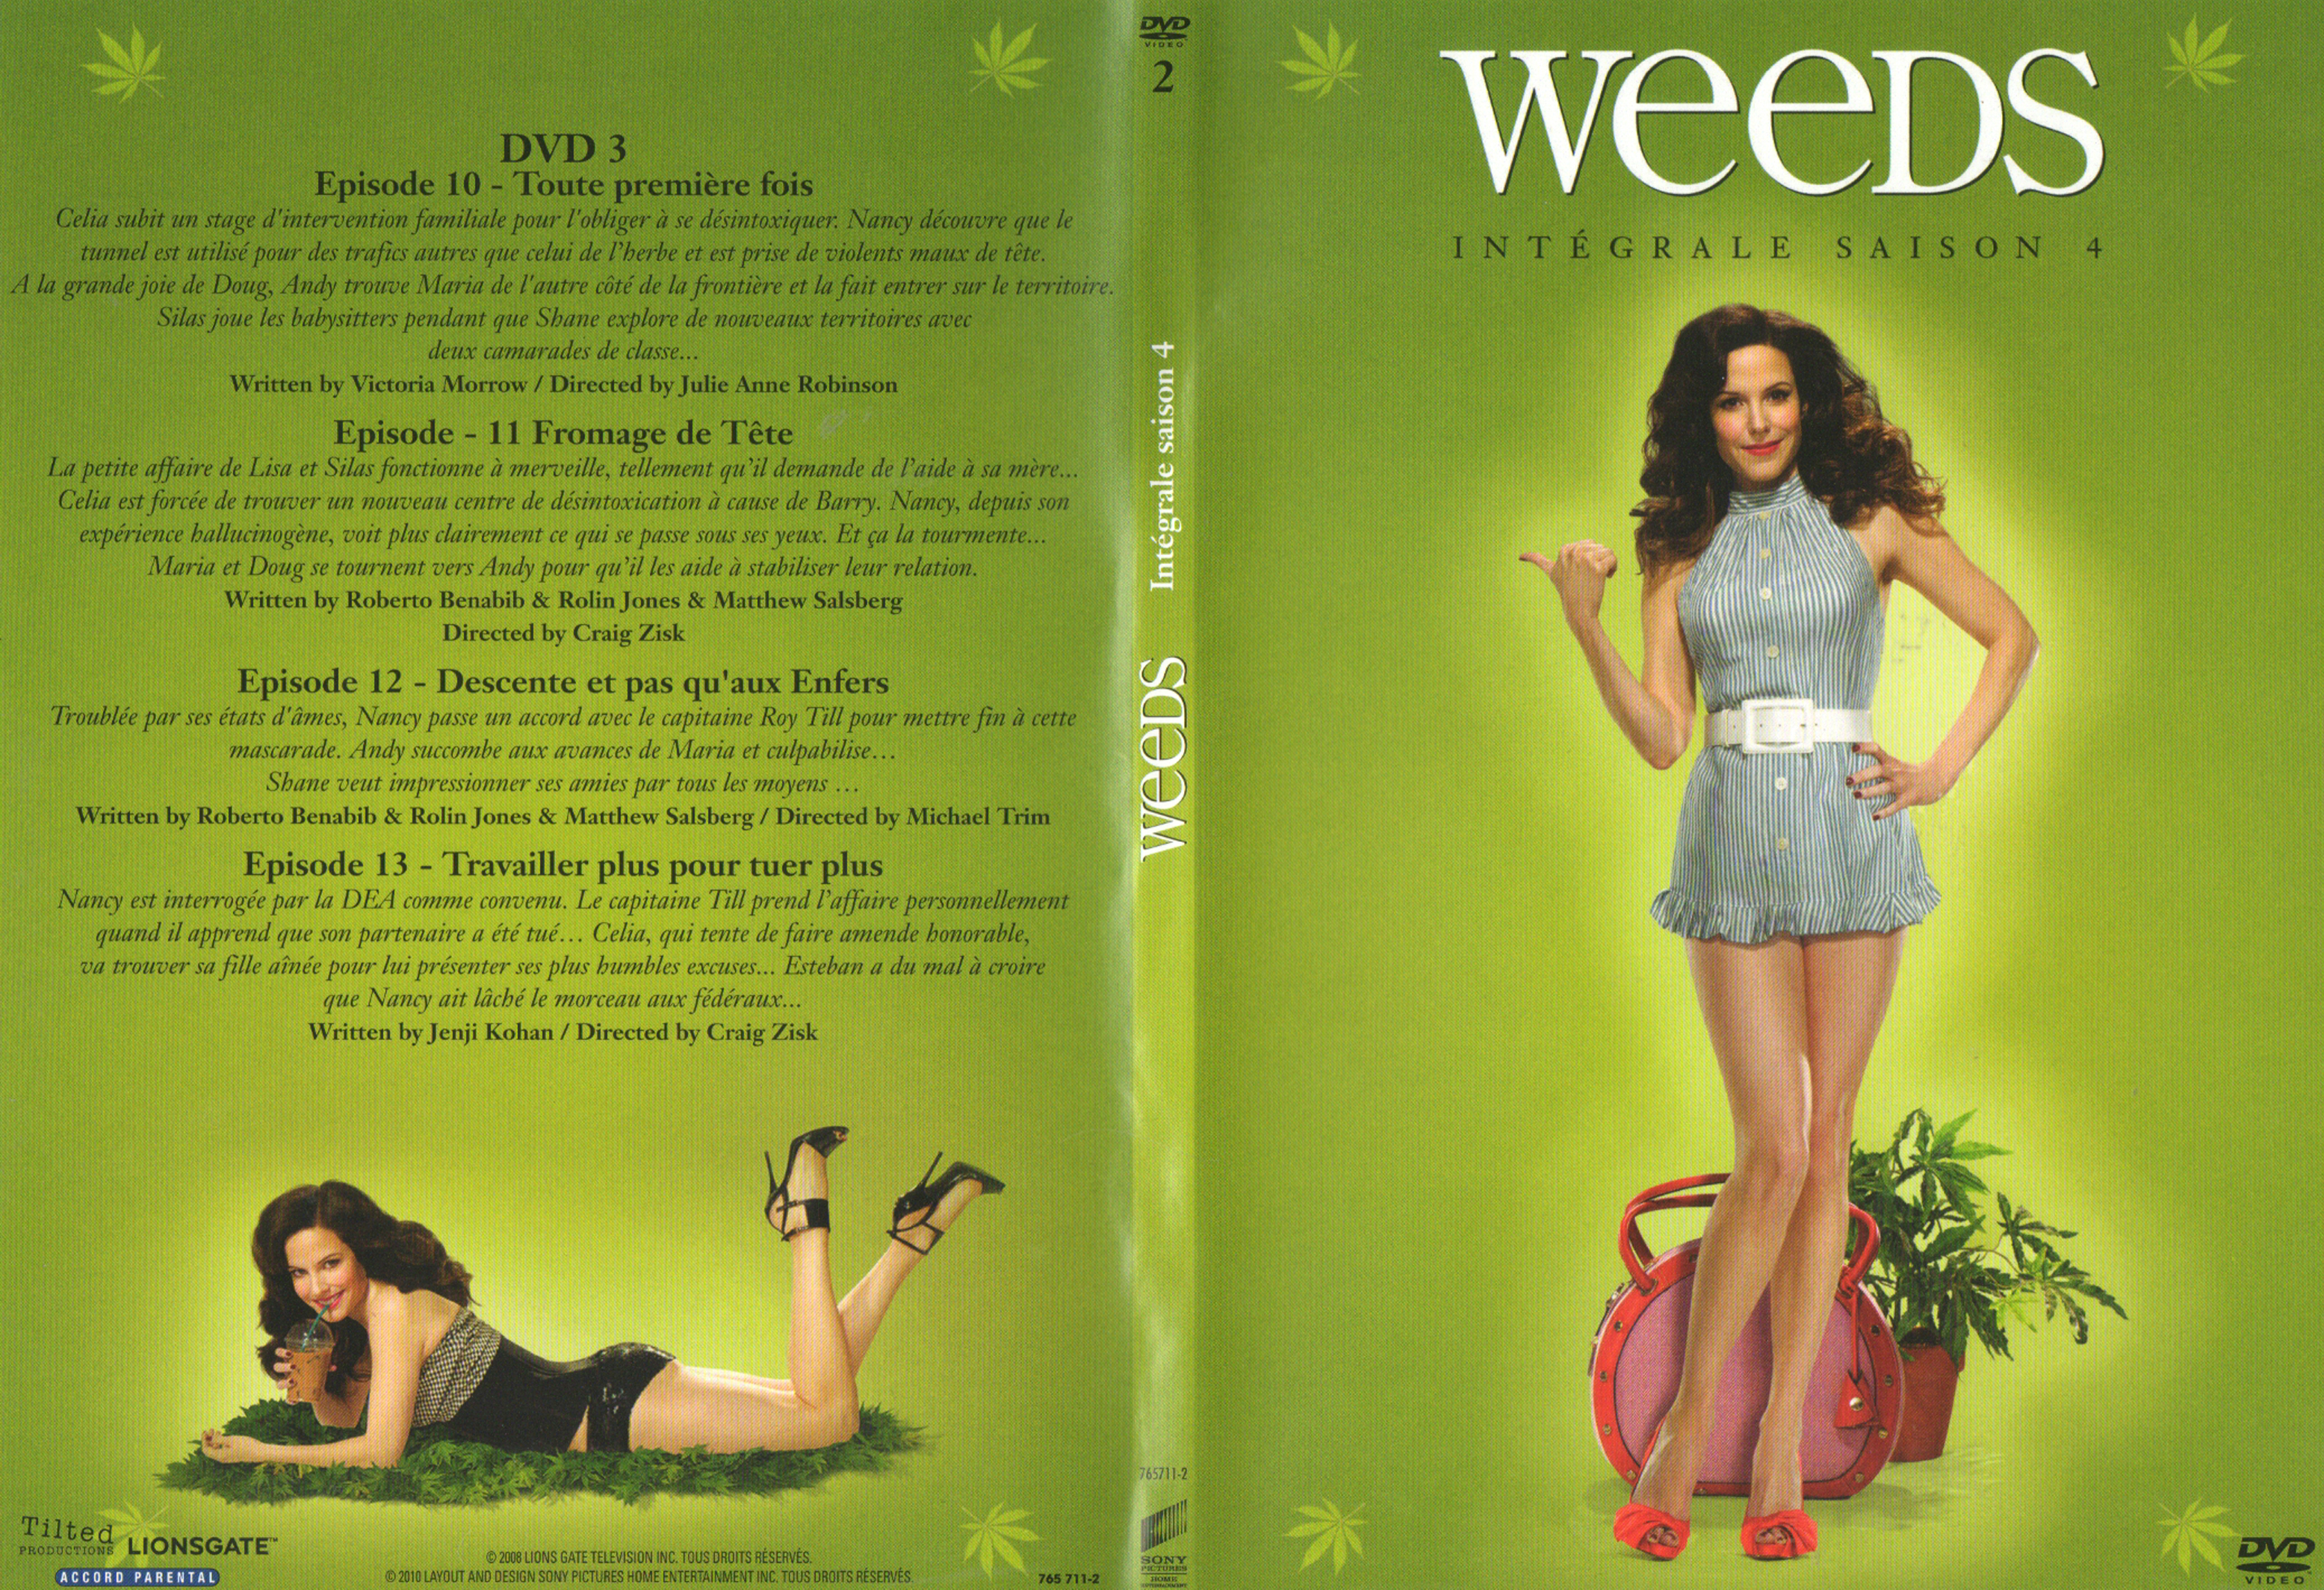 Jaquette DVD Weeds Saison 4 DVD 2